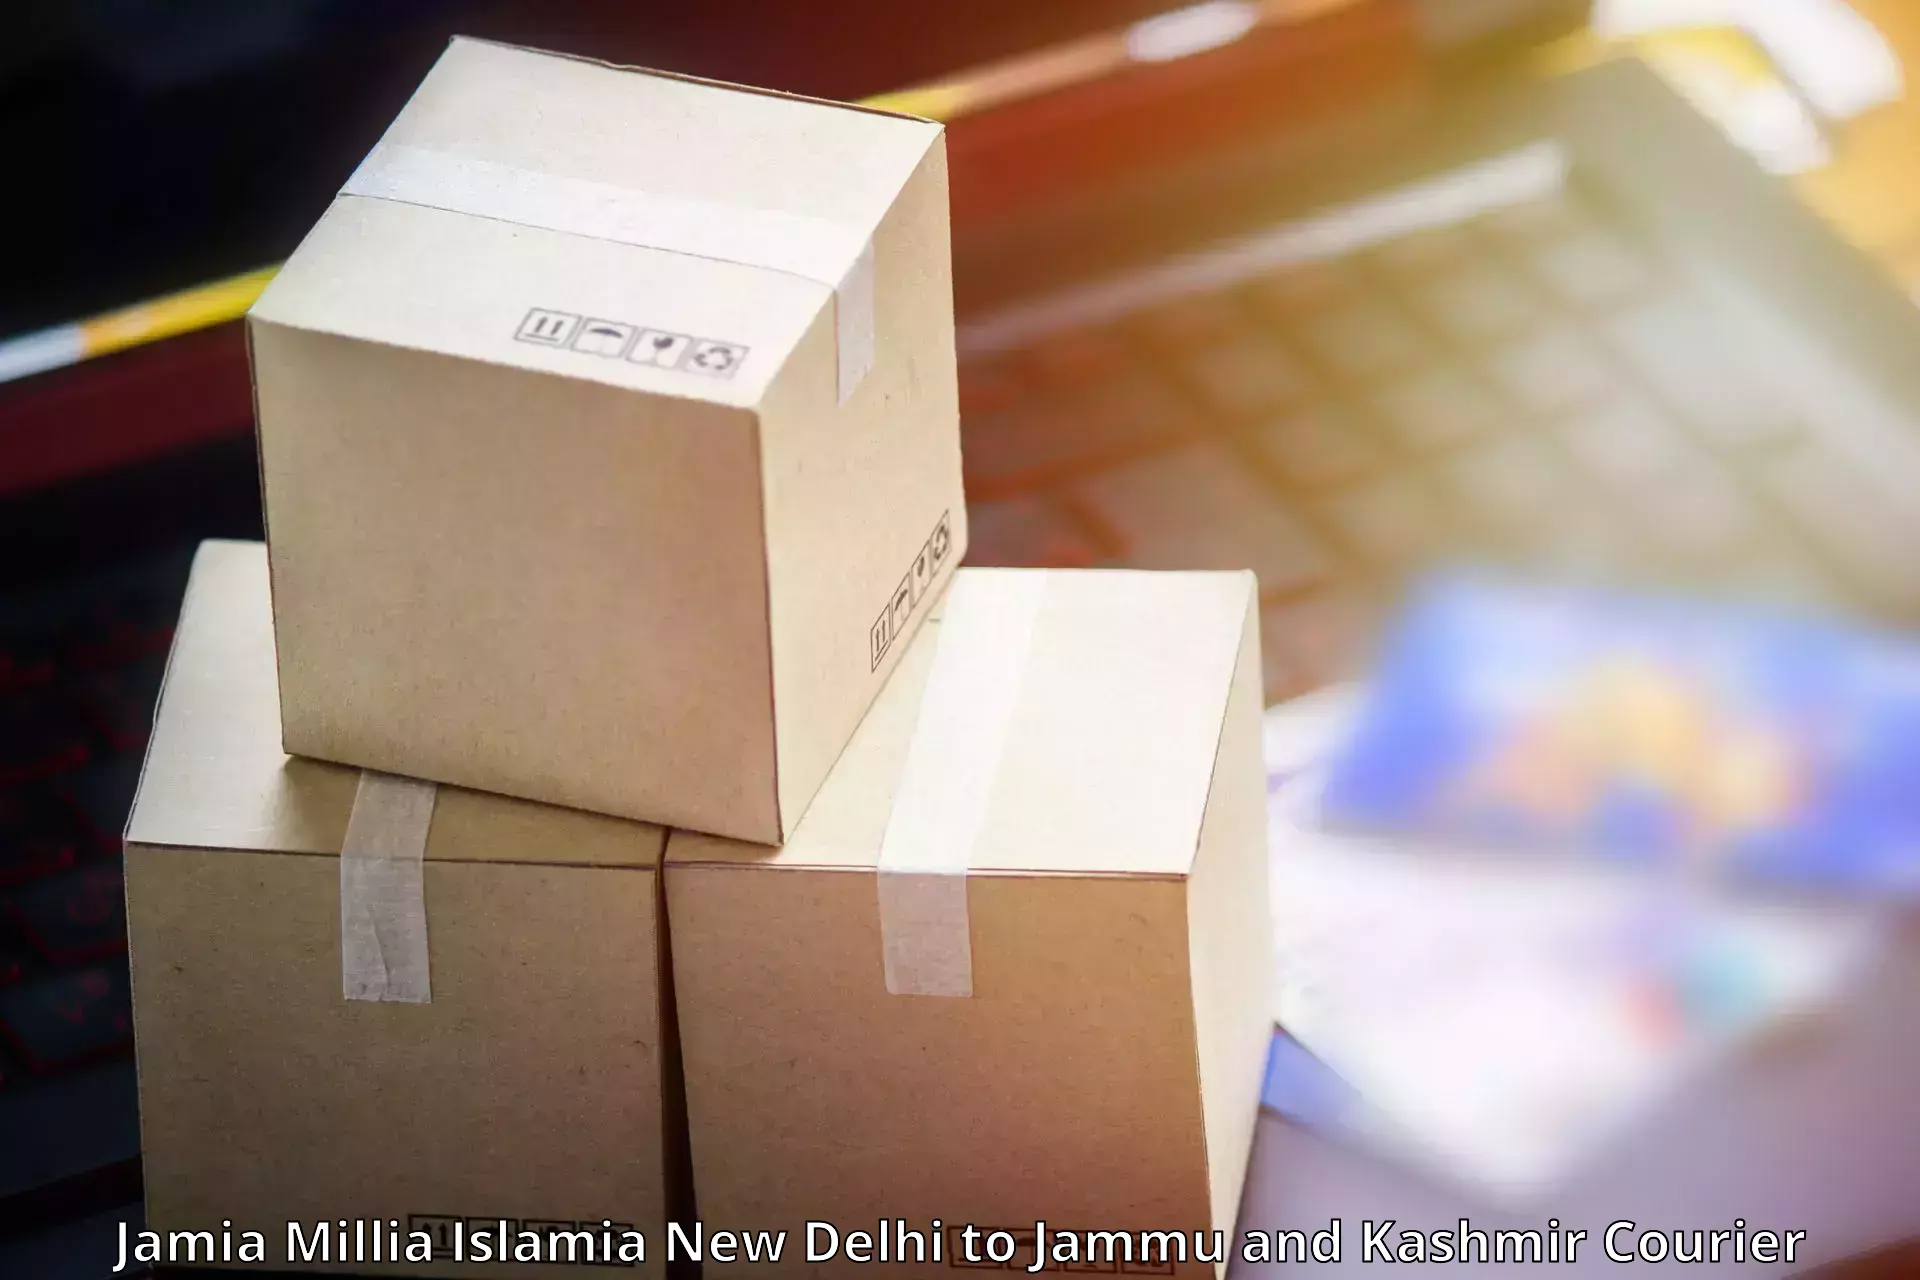 State-of-the-art courier technology Jamia Millia Islamia New Delhi to Sunderbani